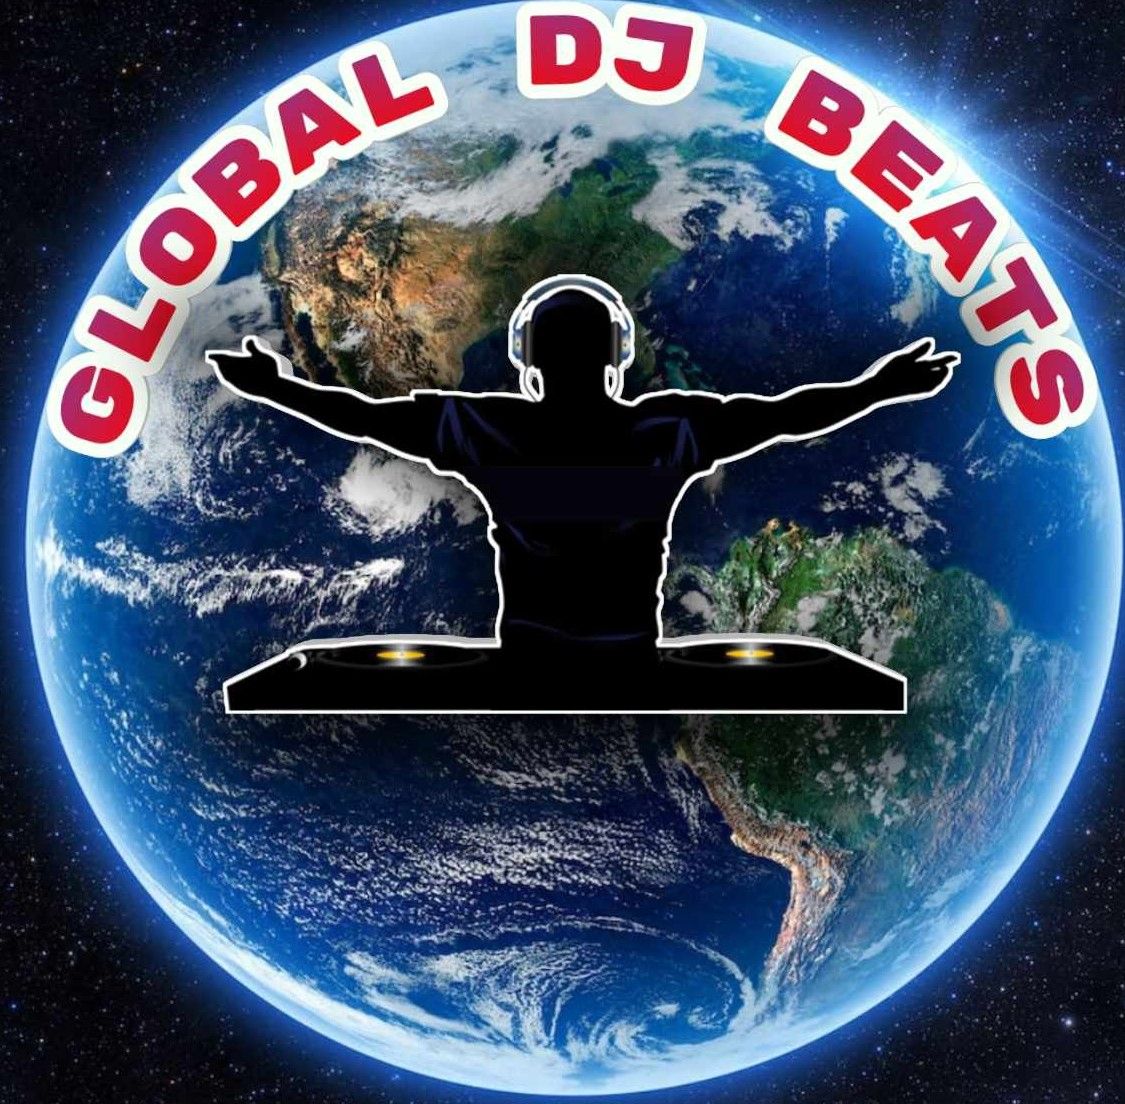 Global DJ beats-vol 8